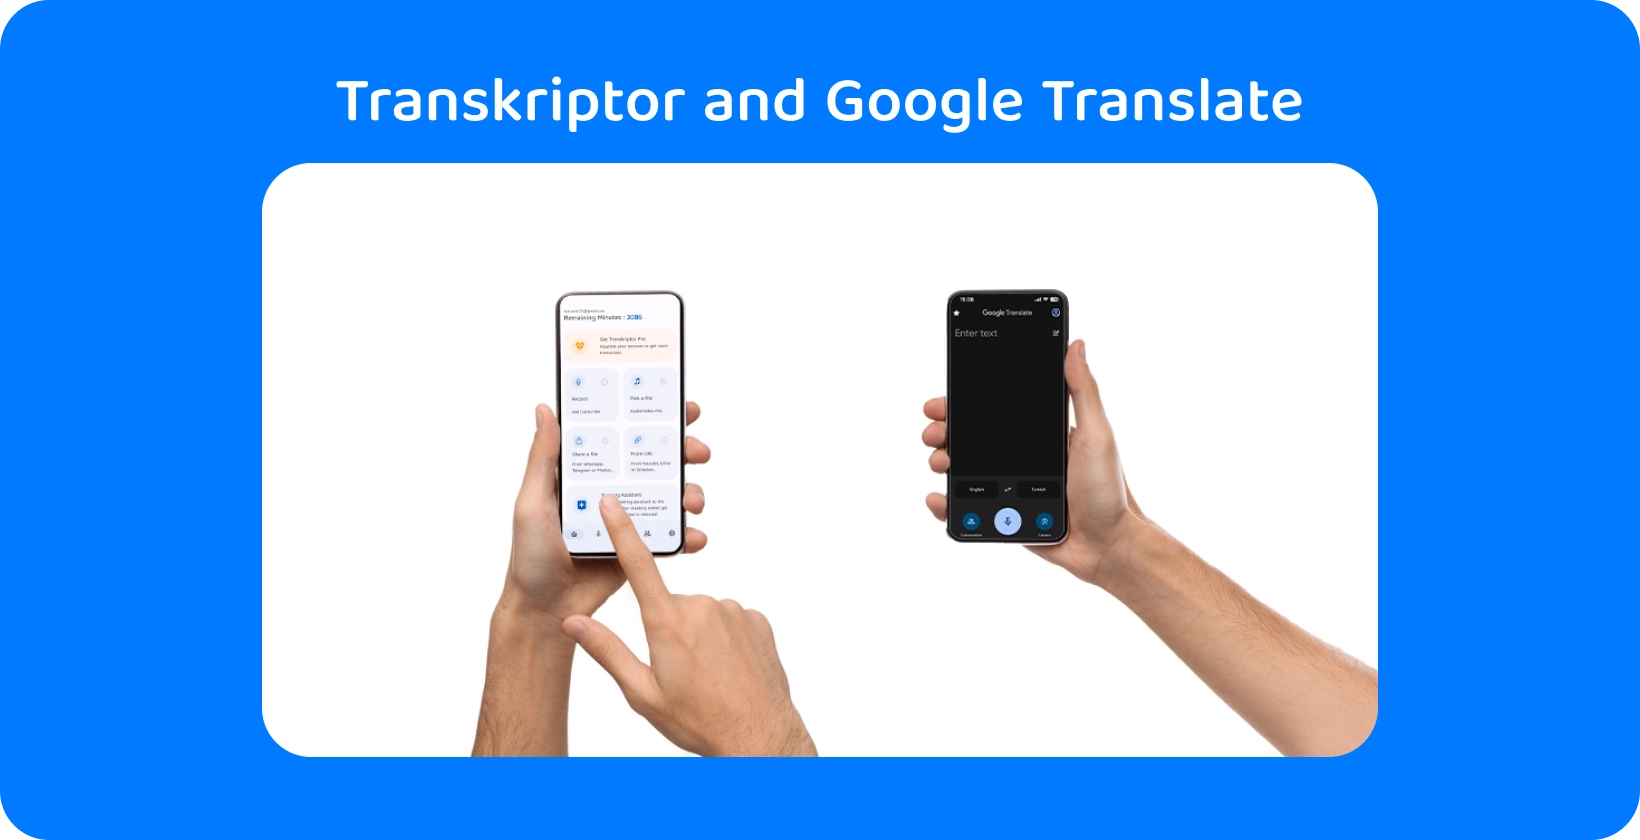 To hender som holder smarttelefoner med Transkriptor og Google Translate, som demonstrerer lydtranskripsjon og oversettelse.